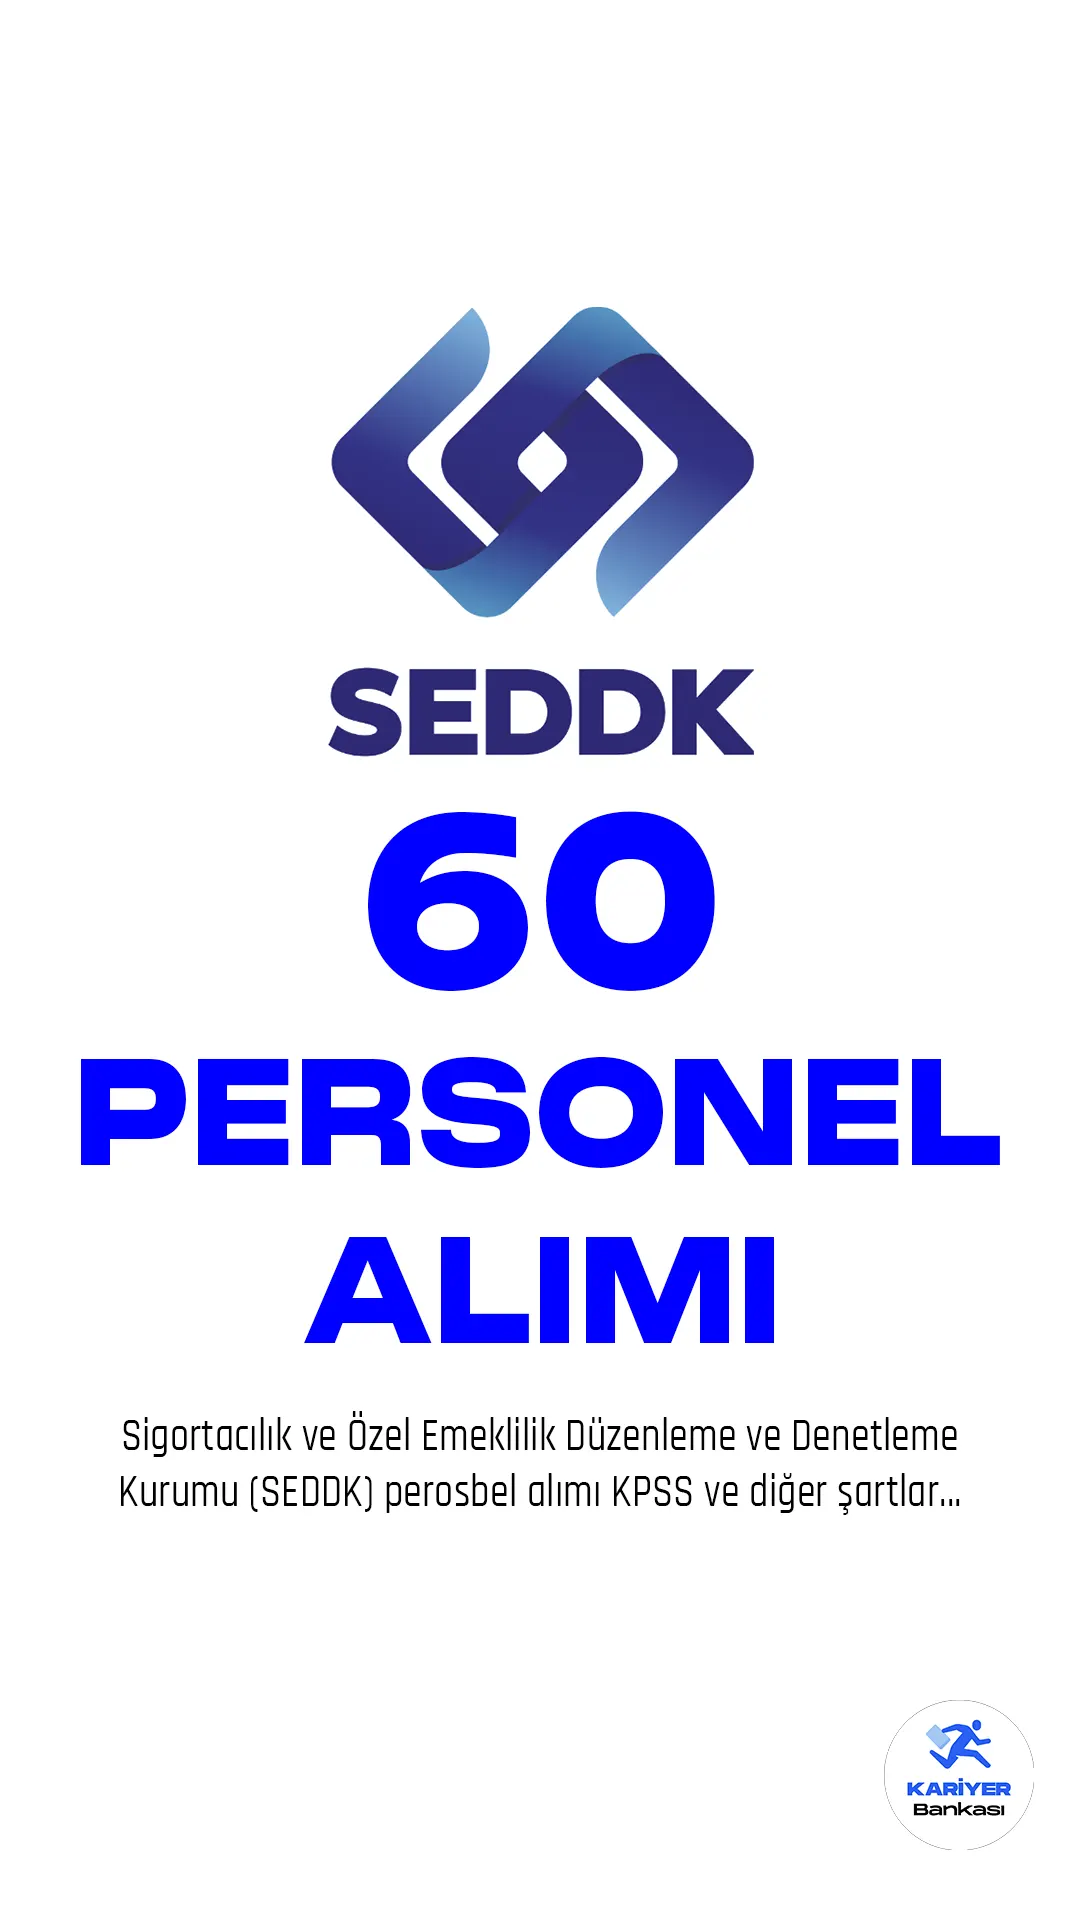 Sigortacılık ve Özel Emeklilik Düzenleme ve Denetleme Kurumu (SEDDK), İstanbul'da istihdam edilmek üzere 60 Sigortacılık Uzman Yardımcısı unvanında meslek personeli alımı için başvurular sürüyor.